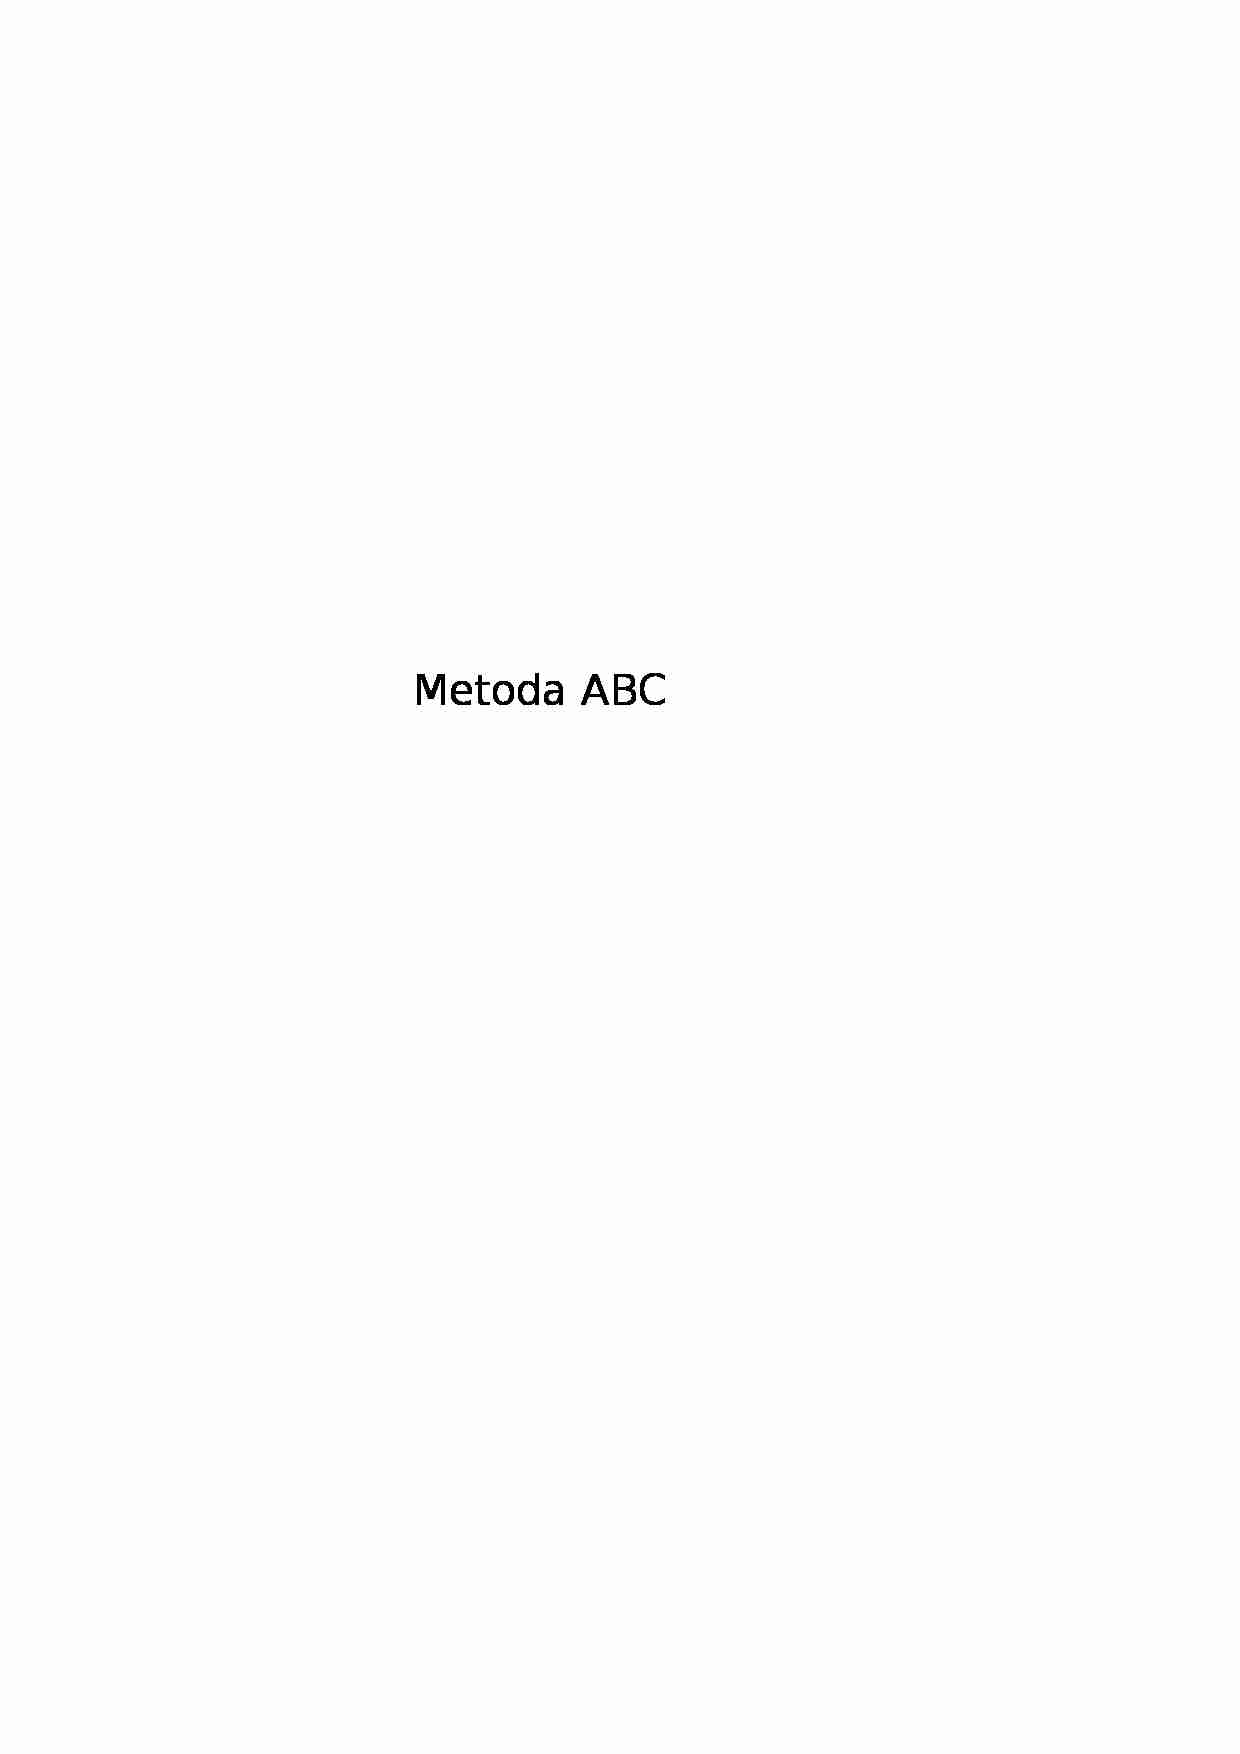 Zarządzanie - Metoda ABC - strona 1